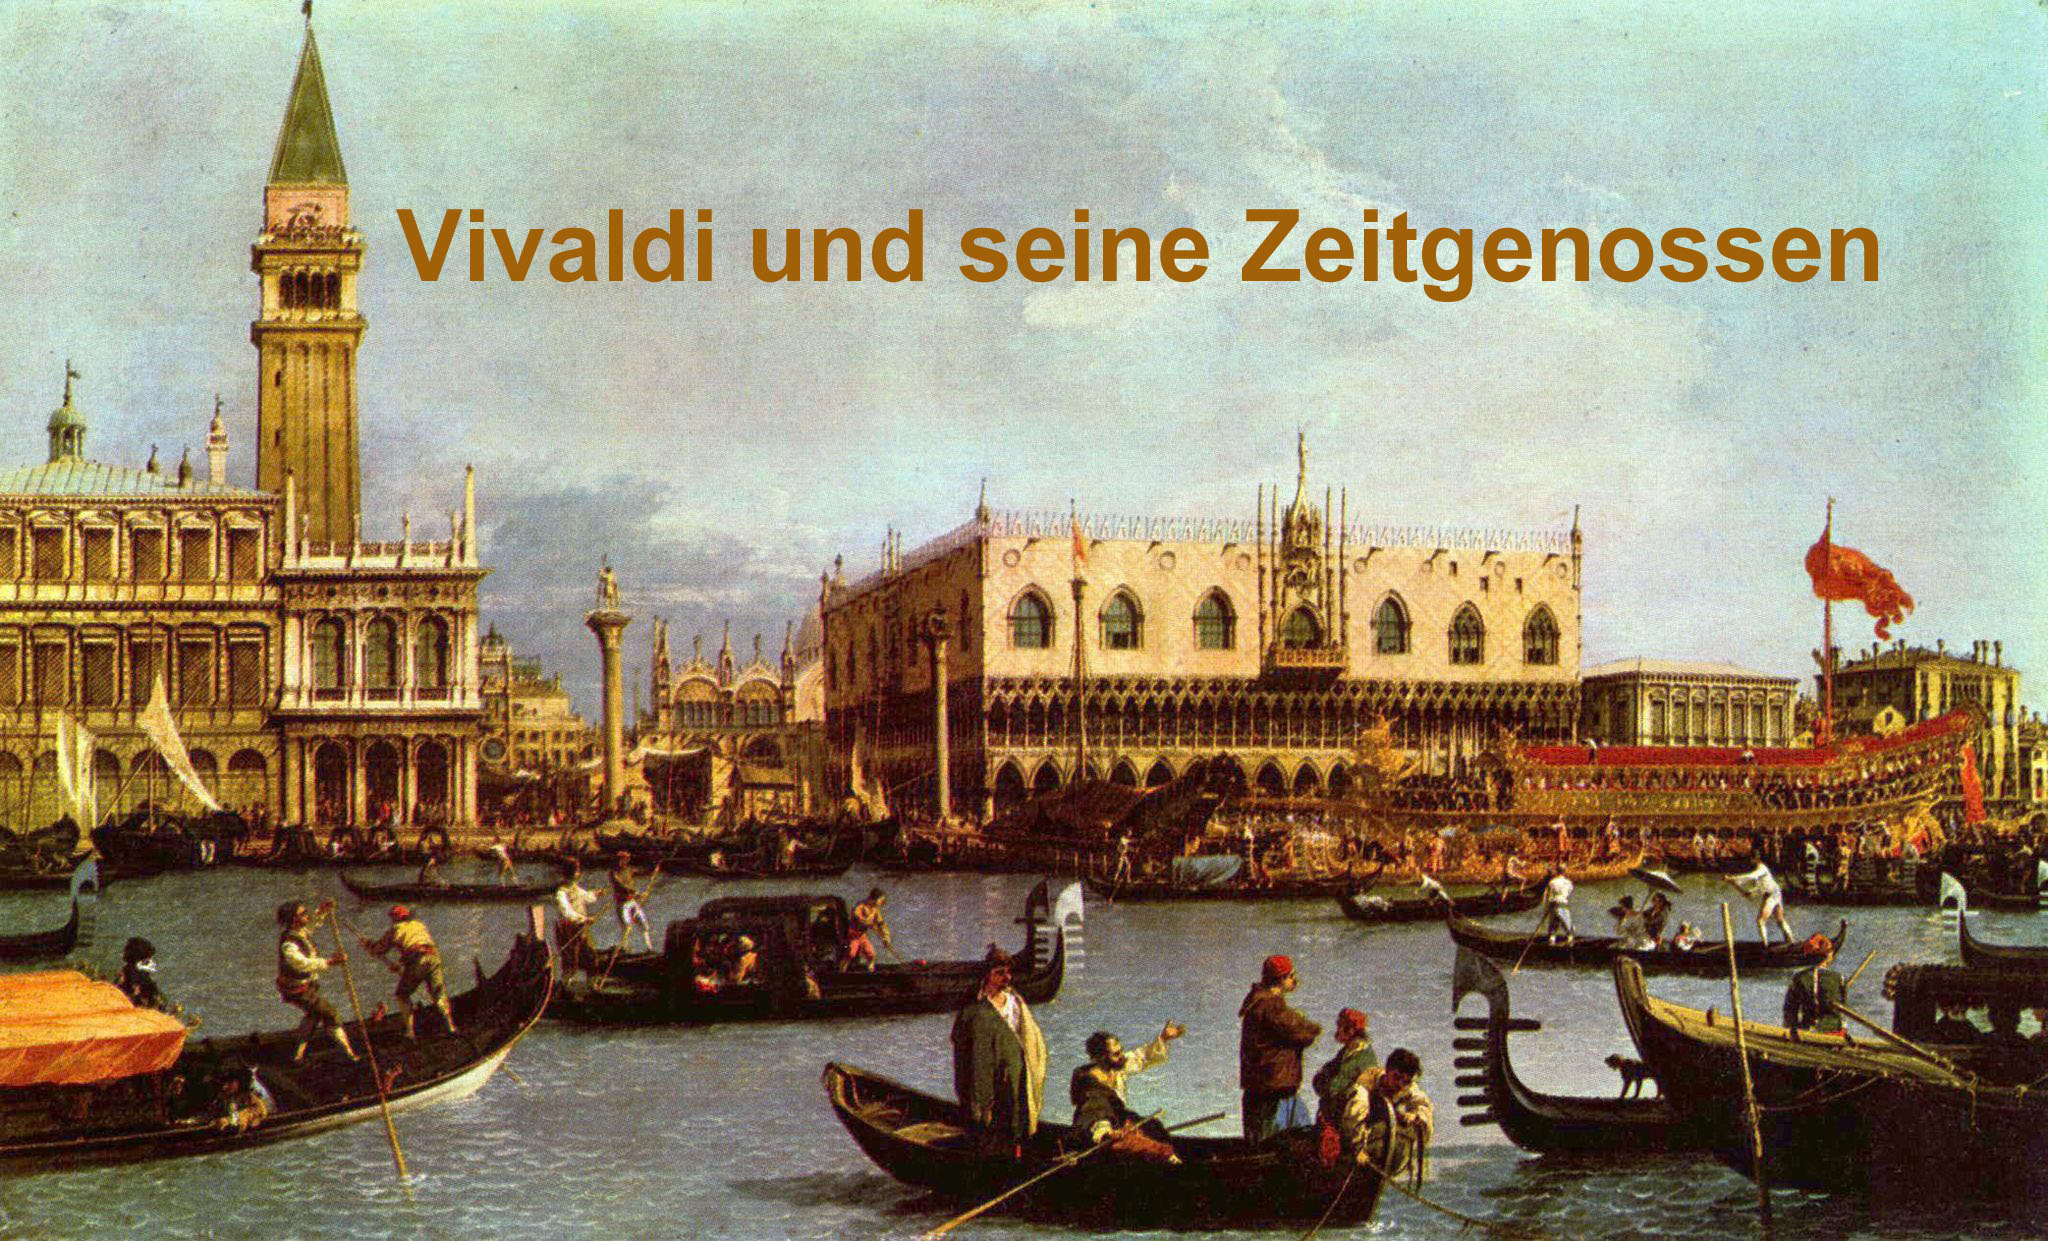 Vivaldi und seine Zeitgenossen